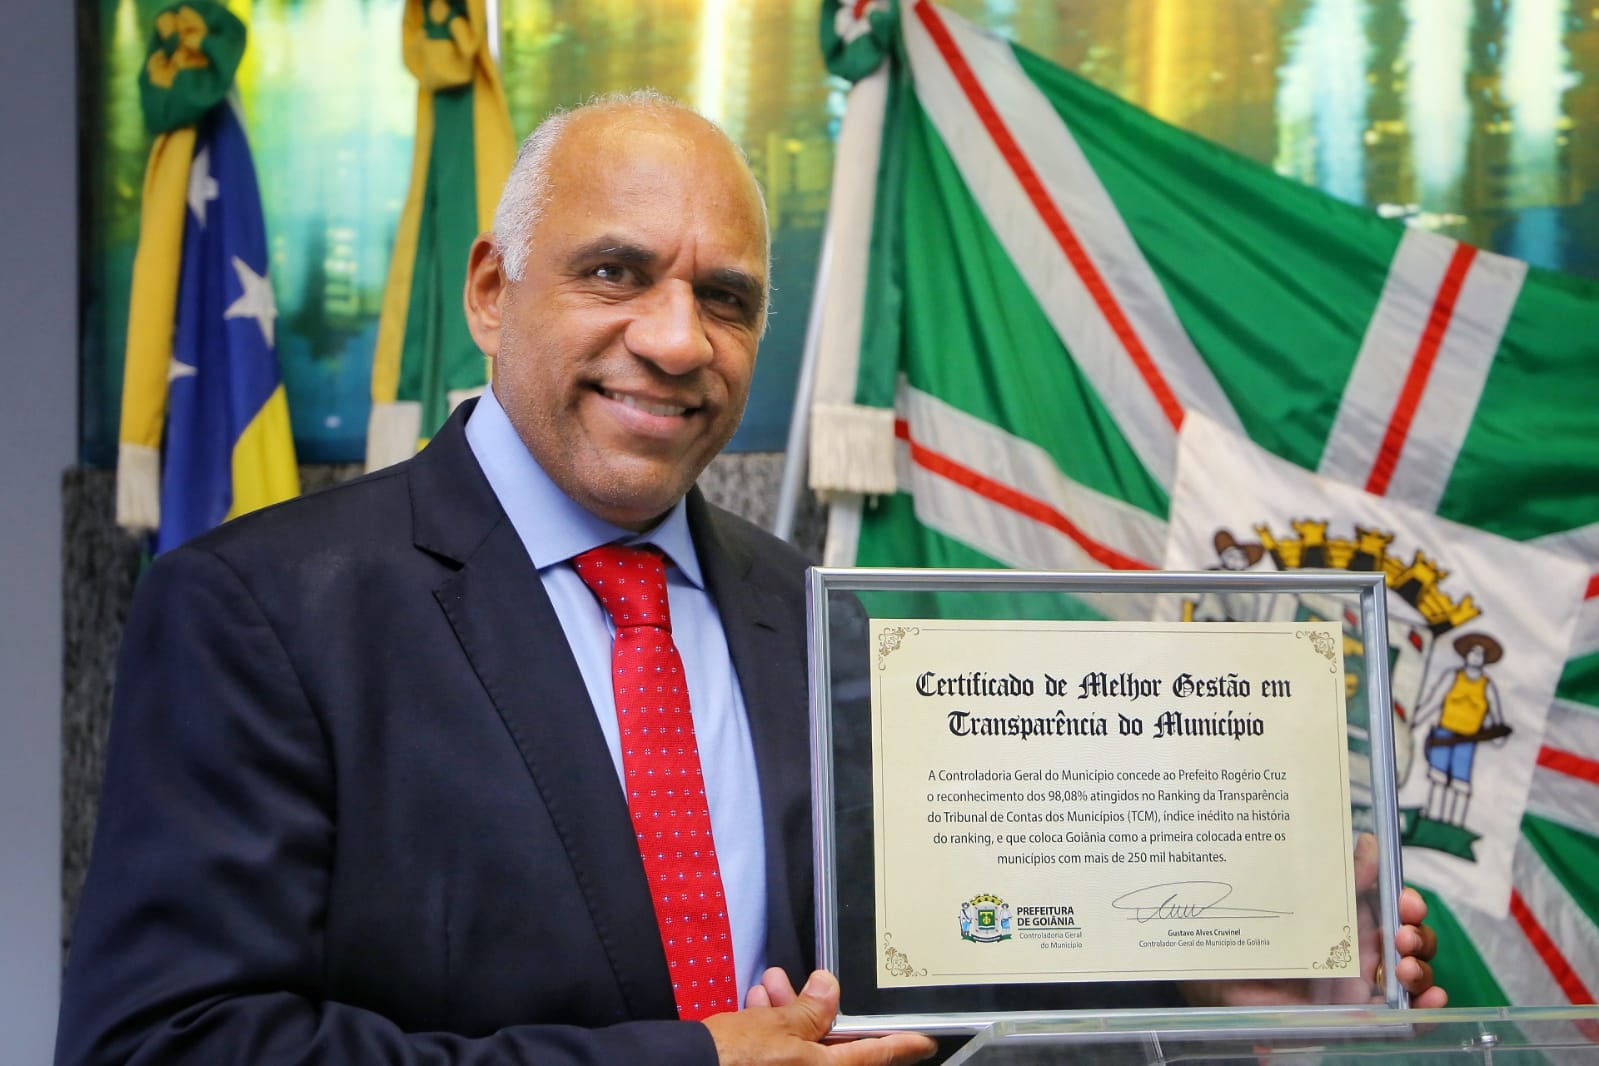 Prefeito Rogério Cruz lança Manual de Transparência do Município de Goiânia, e é homenageado por índice histórico de 98,08% em ranking do TCM